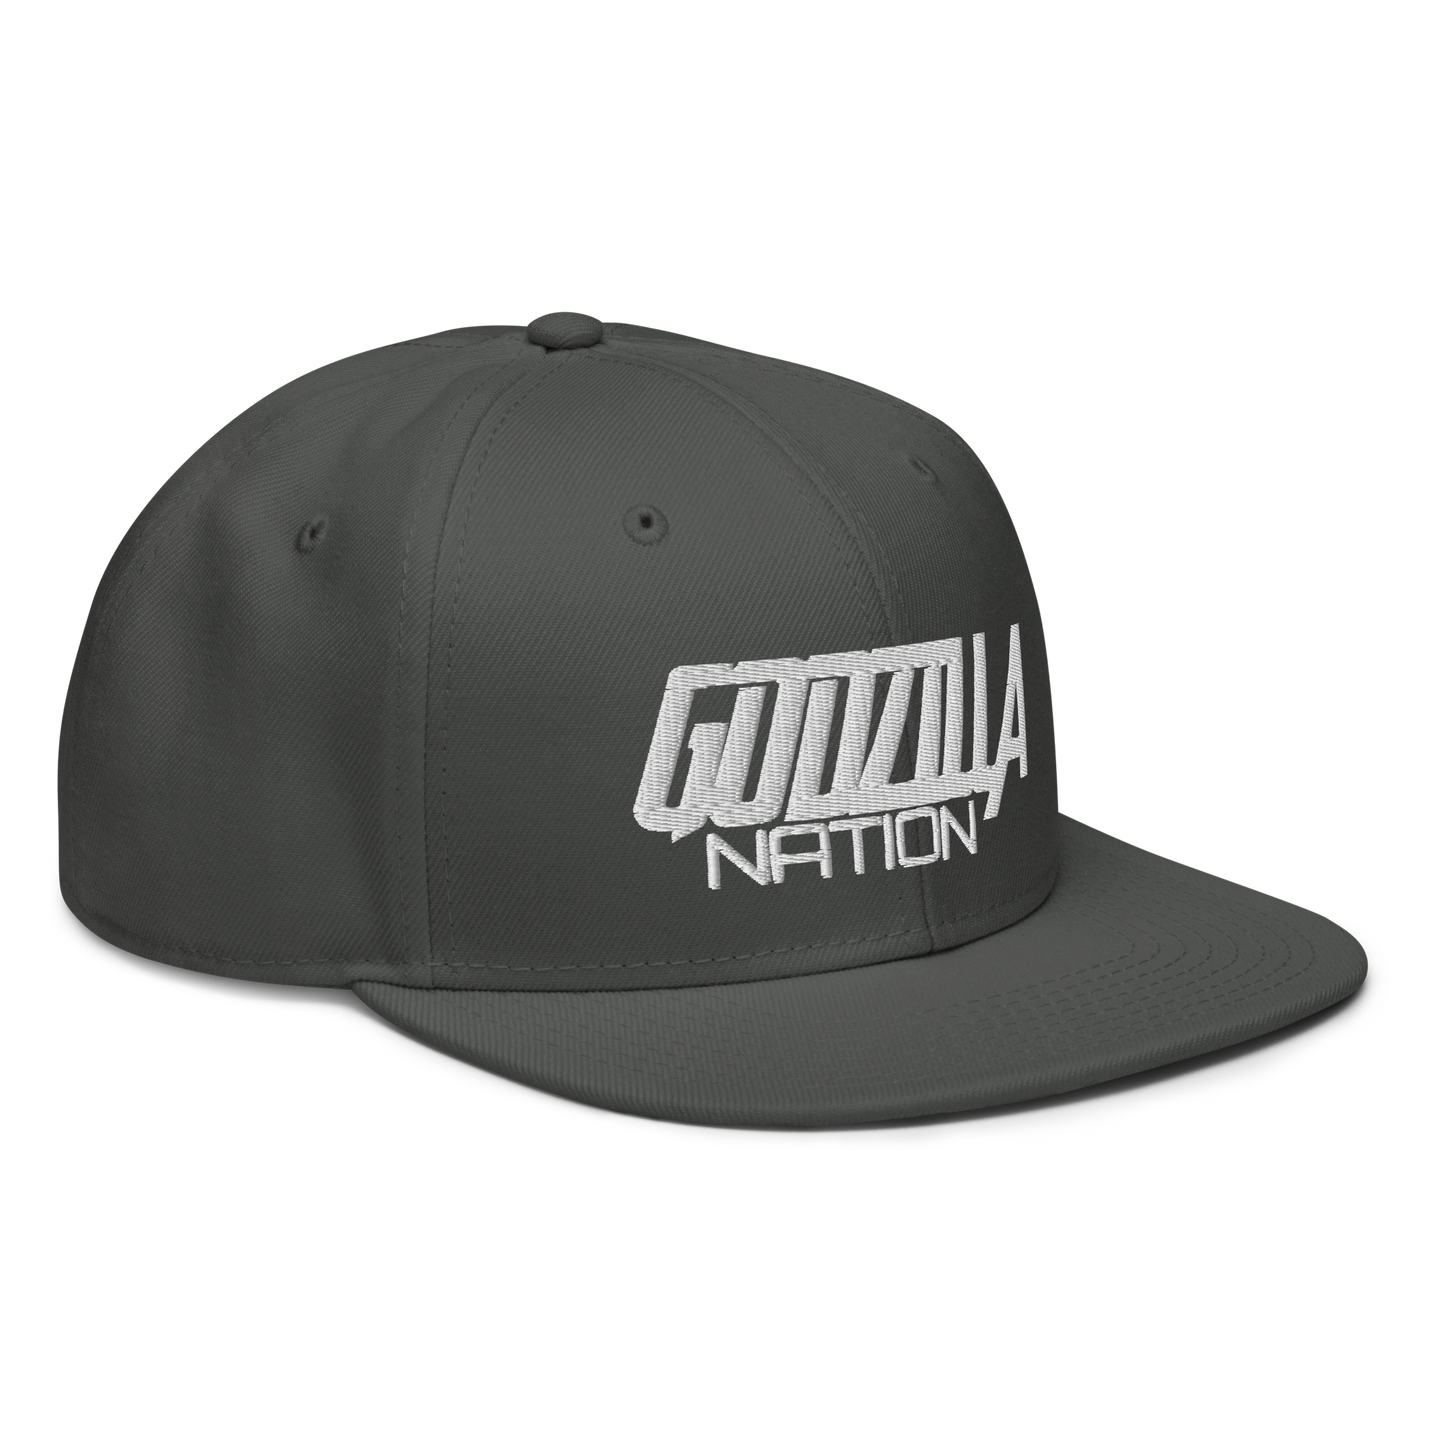 GODZILLA NATION - Snapback Cap